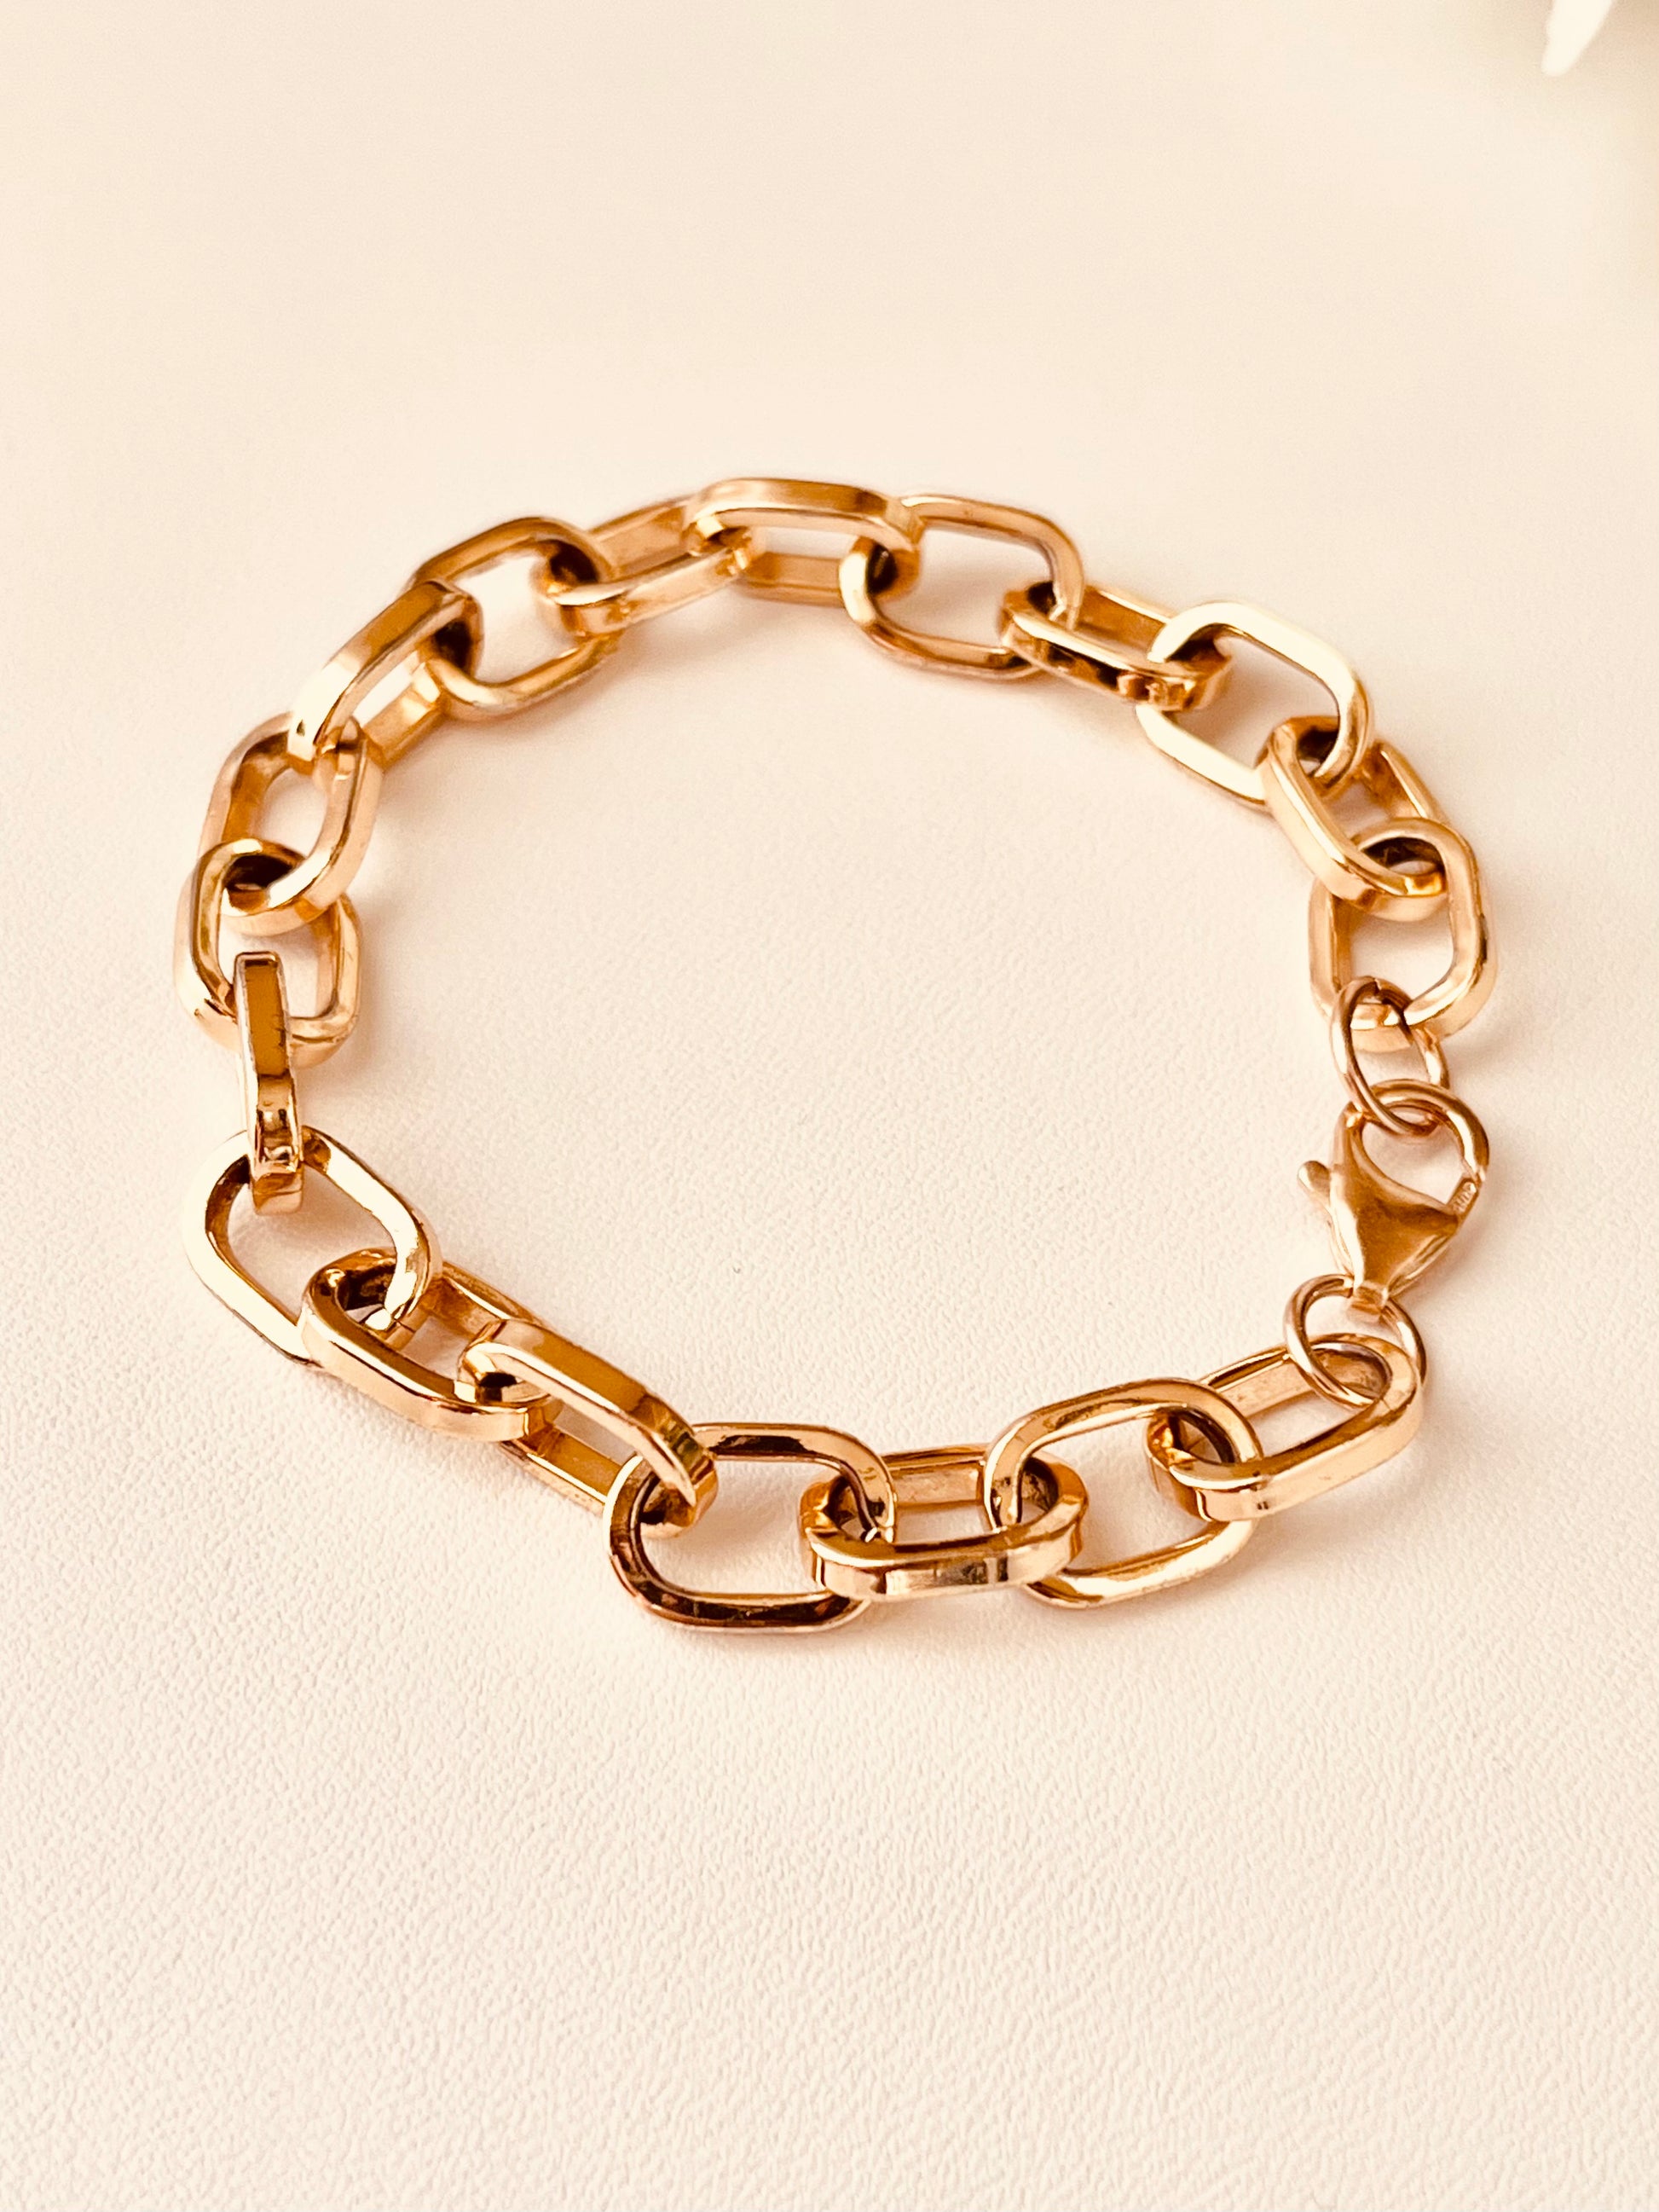 Chunky Chain Bracelet, Chunky Link Bracelet, Gold Thick Bracelet, Thick Link Bracelet, Layering Bracelet, Statement Bracelet, Gift Ideas